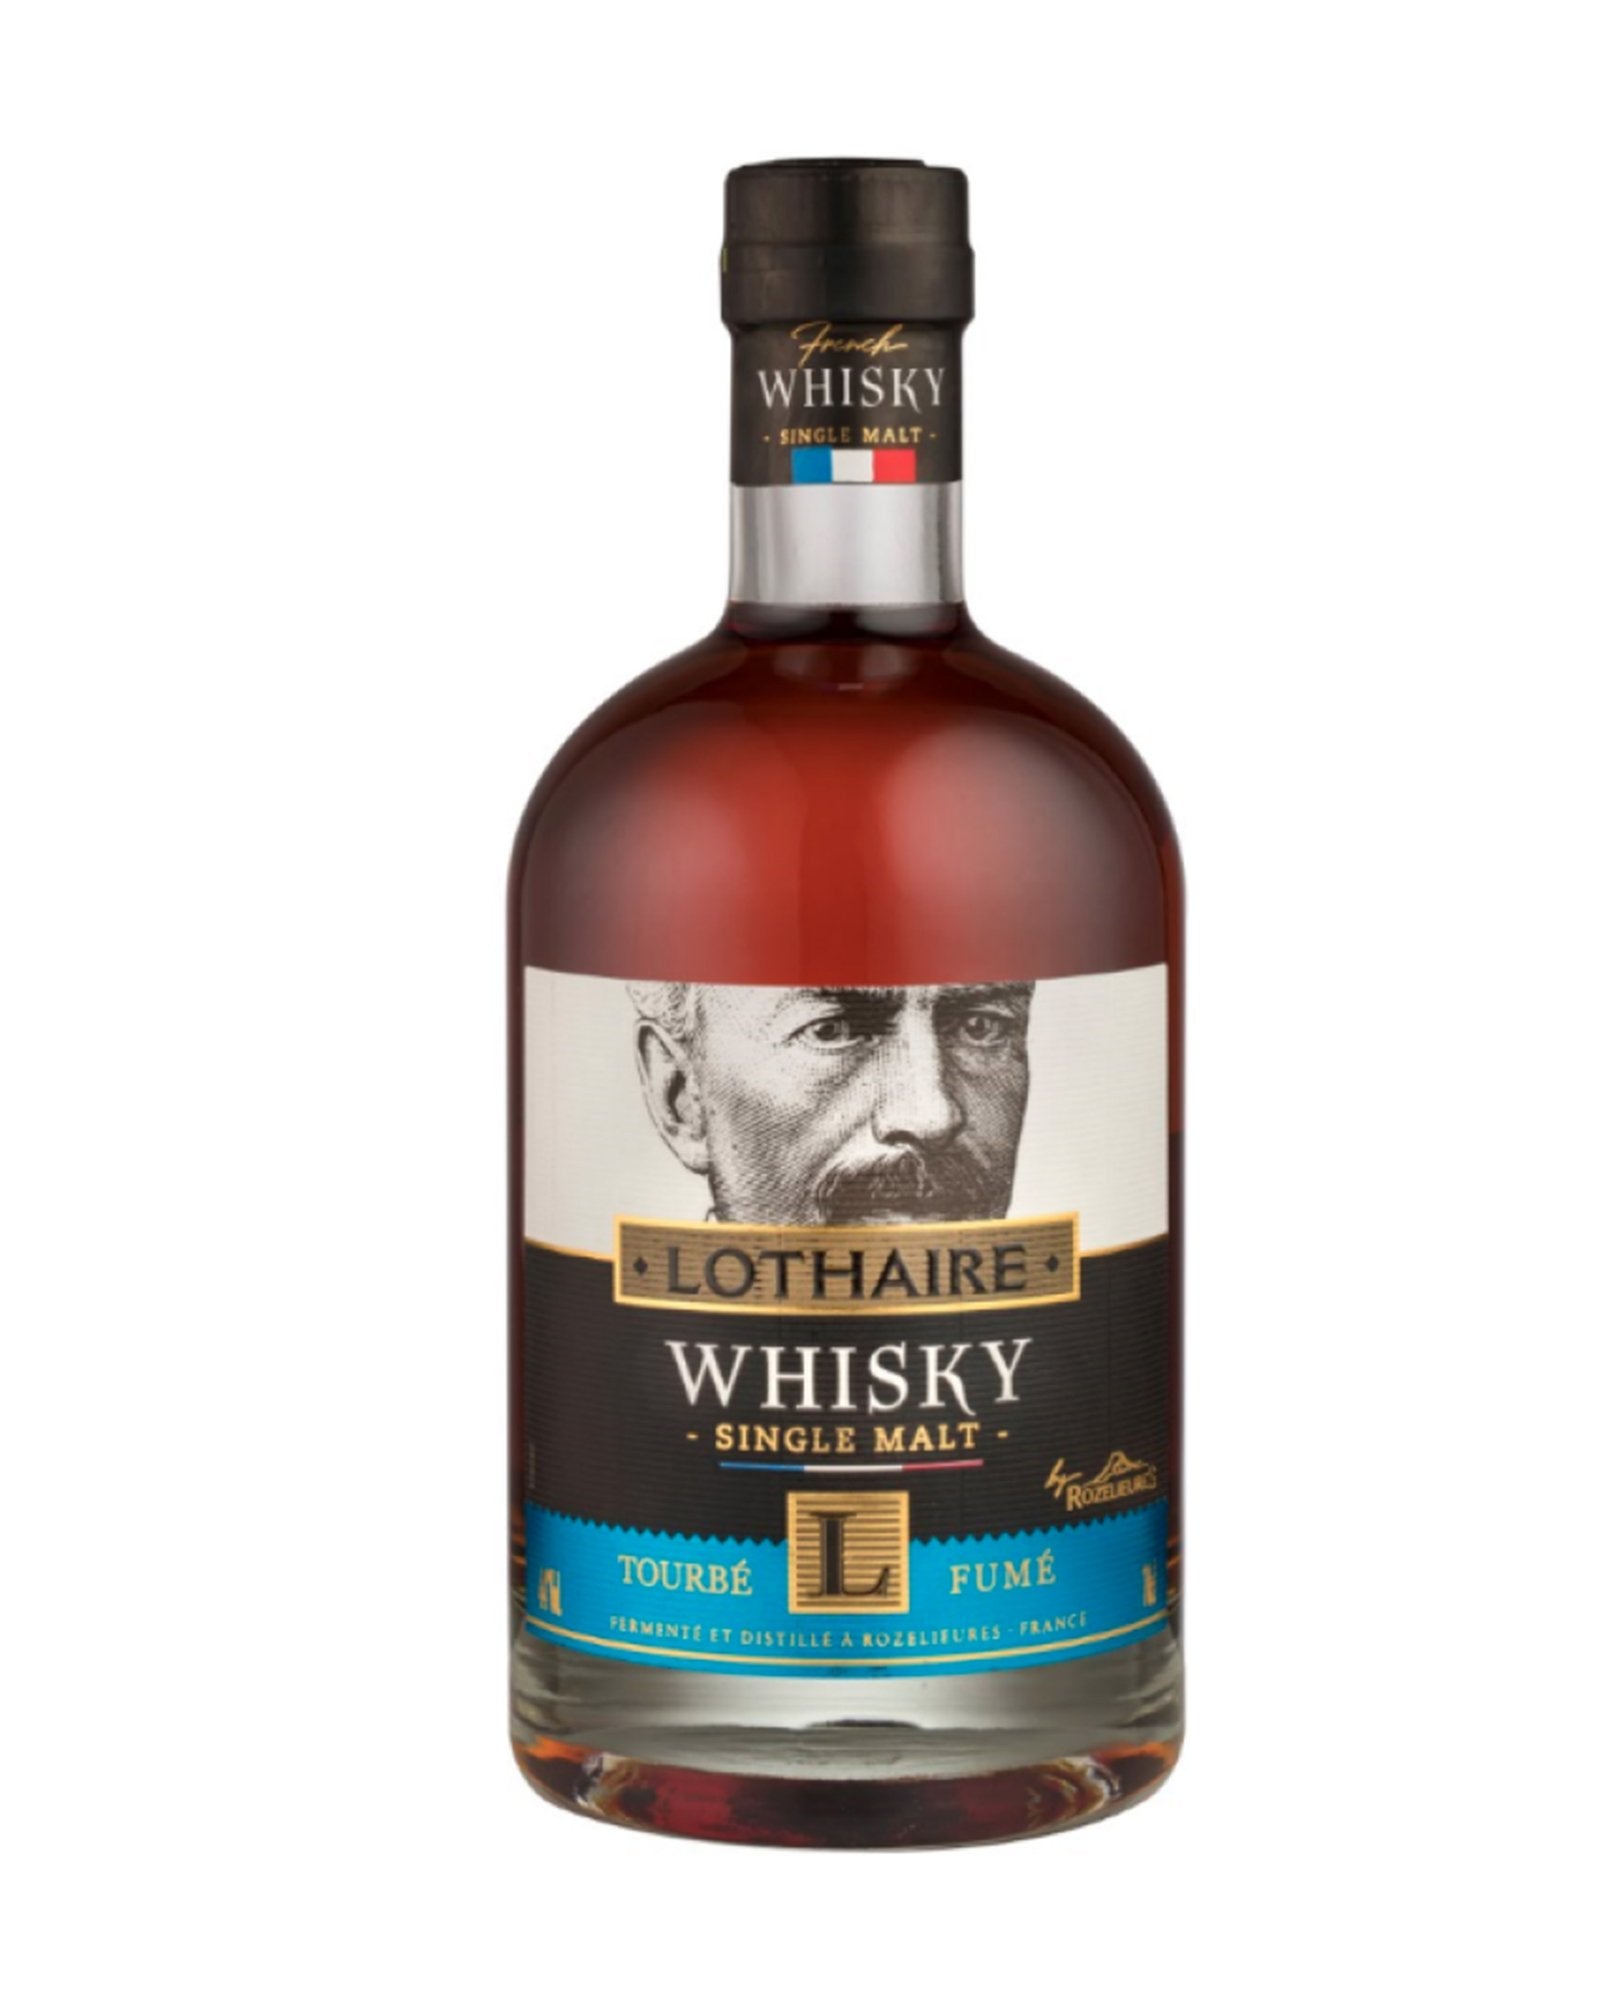 Notre nouvelle sélection "Whisky" à La Réunion